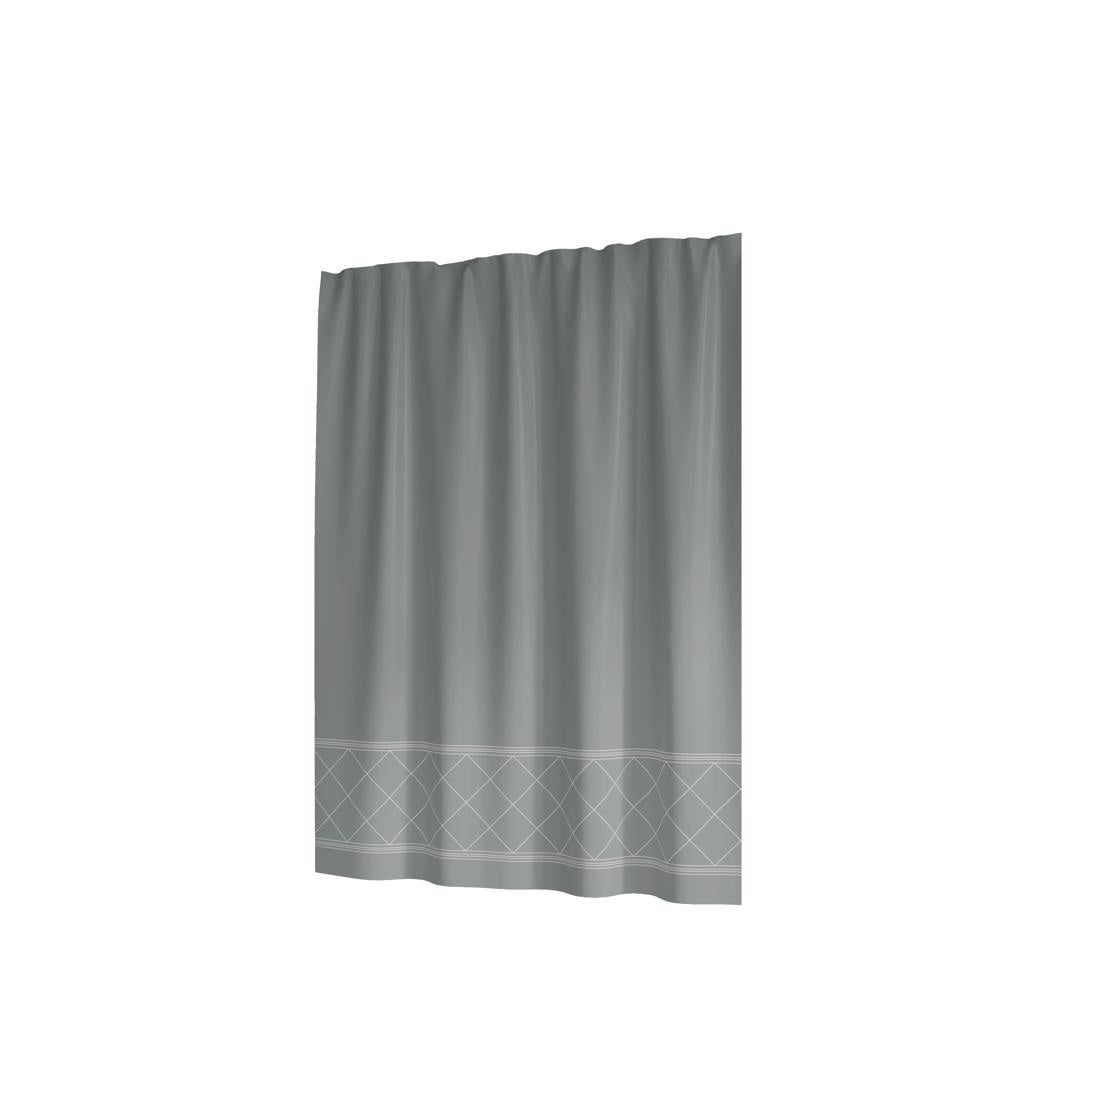 Sttelli RAS-115-LIM Radiance Shower Curtain, Polyester